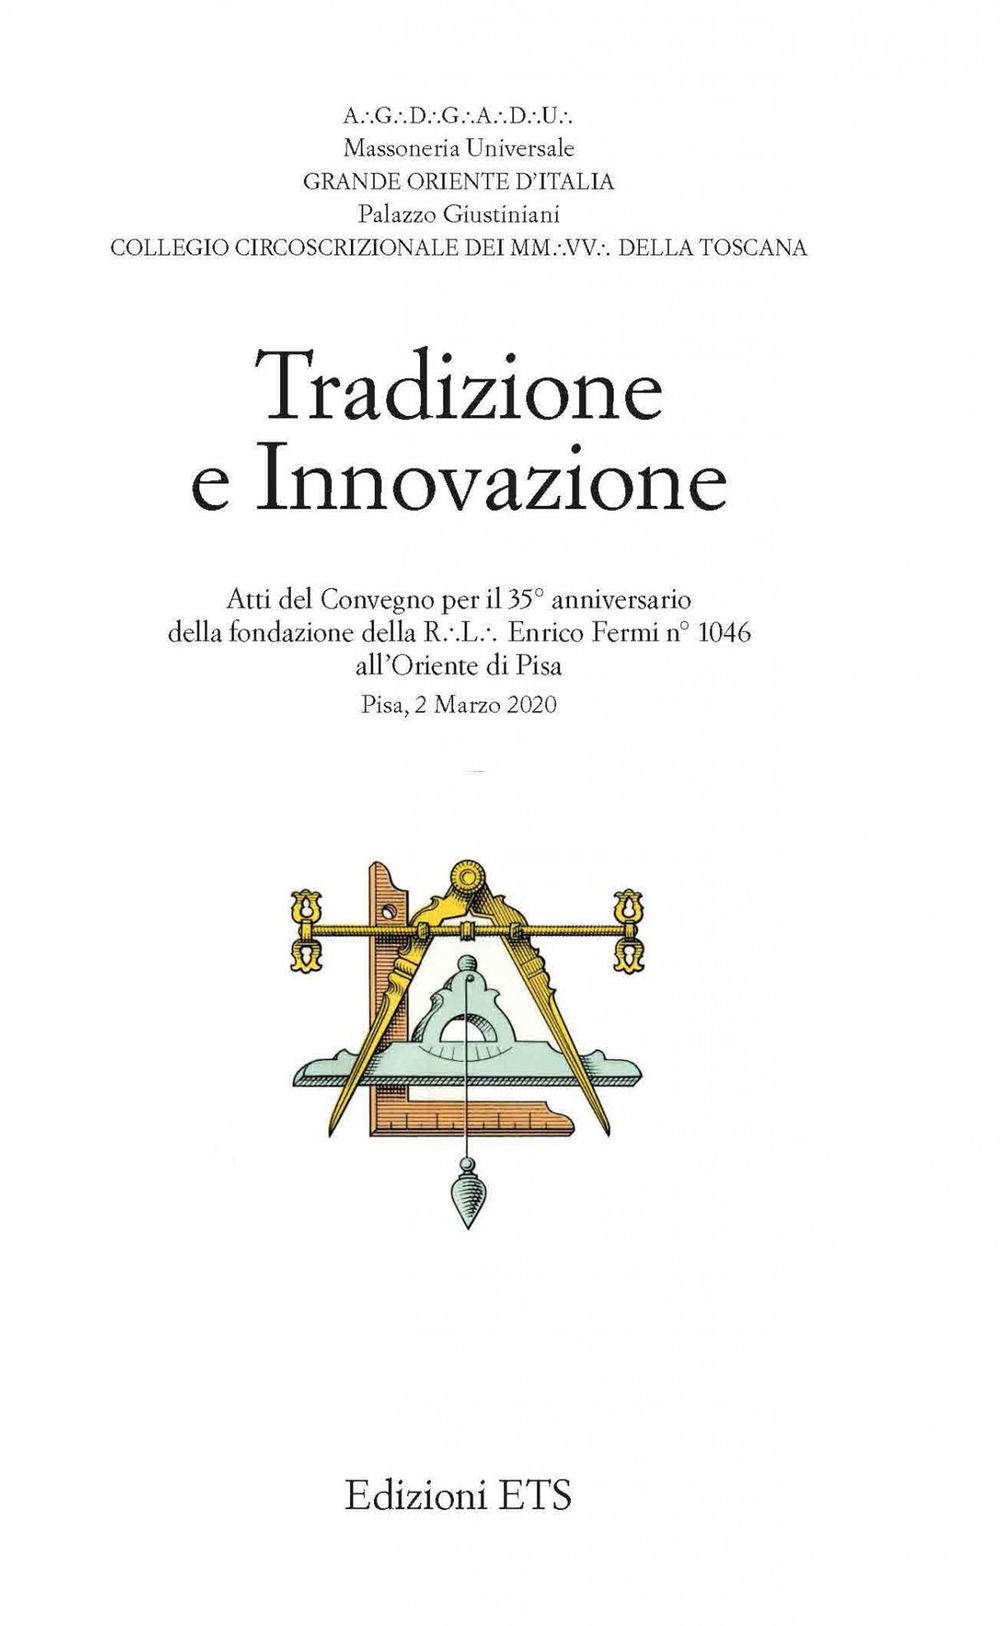 Tradizione e innovazione. Atti del Convegno per il 35° anniversario della fondazione della R.L. Enrico Fermi n°1046 all'Oriente di Pisa (Pisa, 2 Marzo 2020)